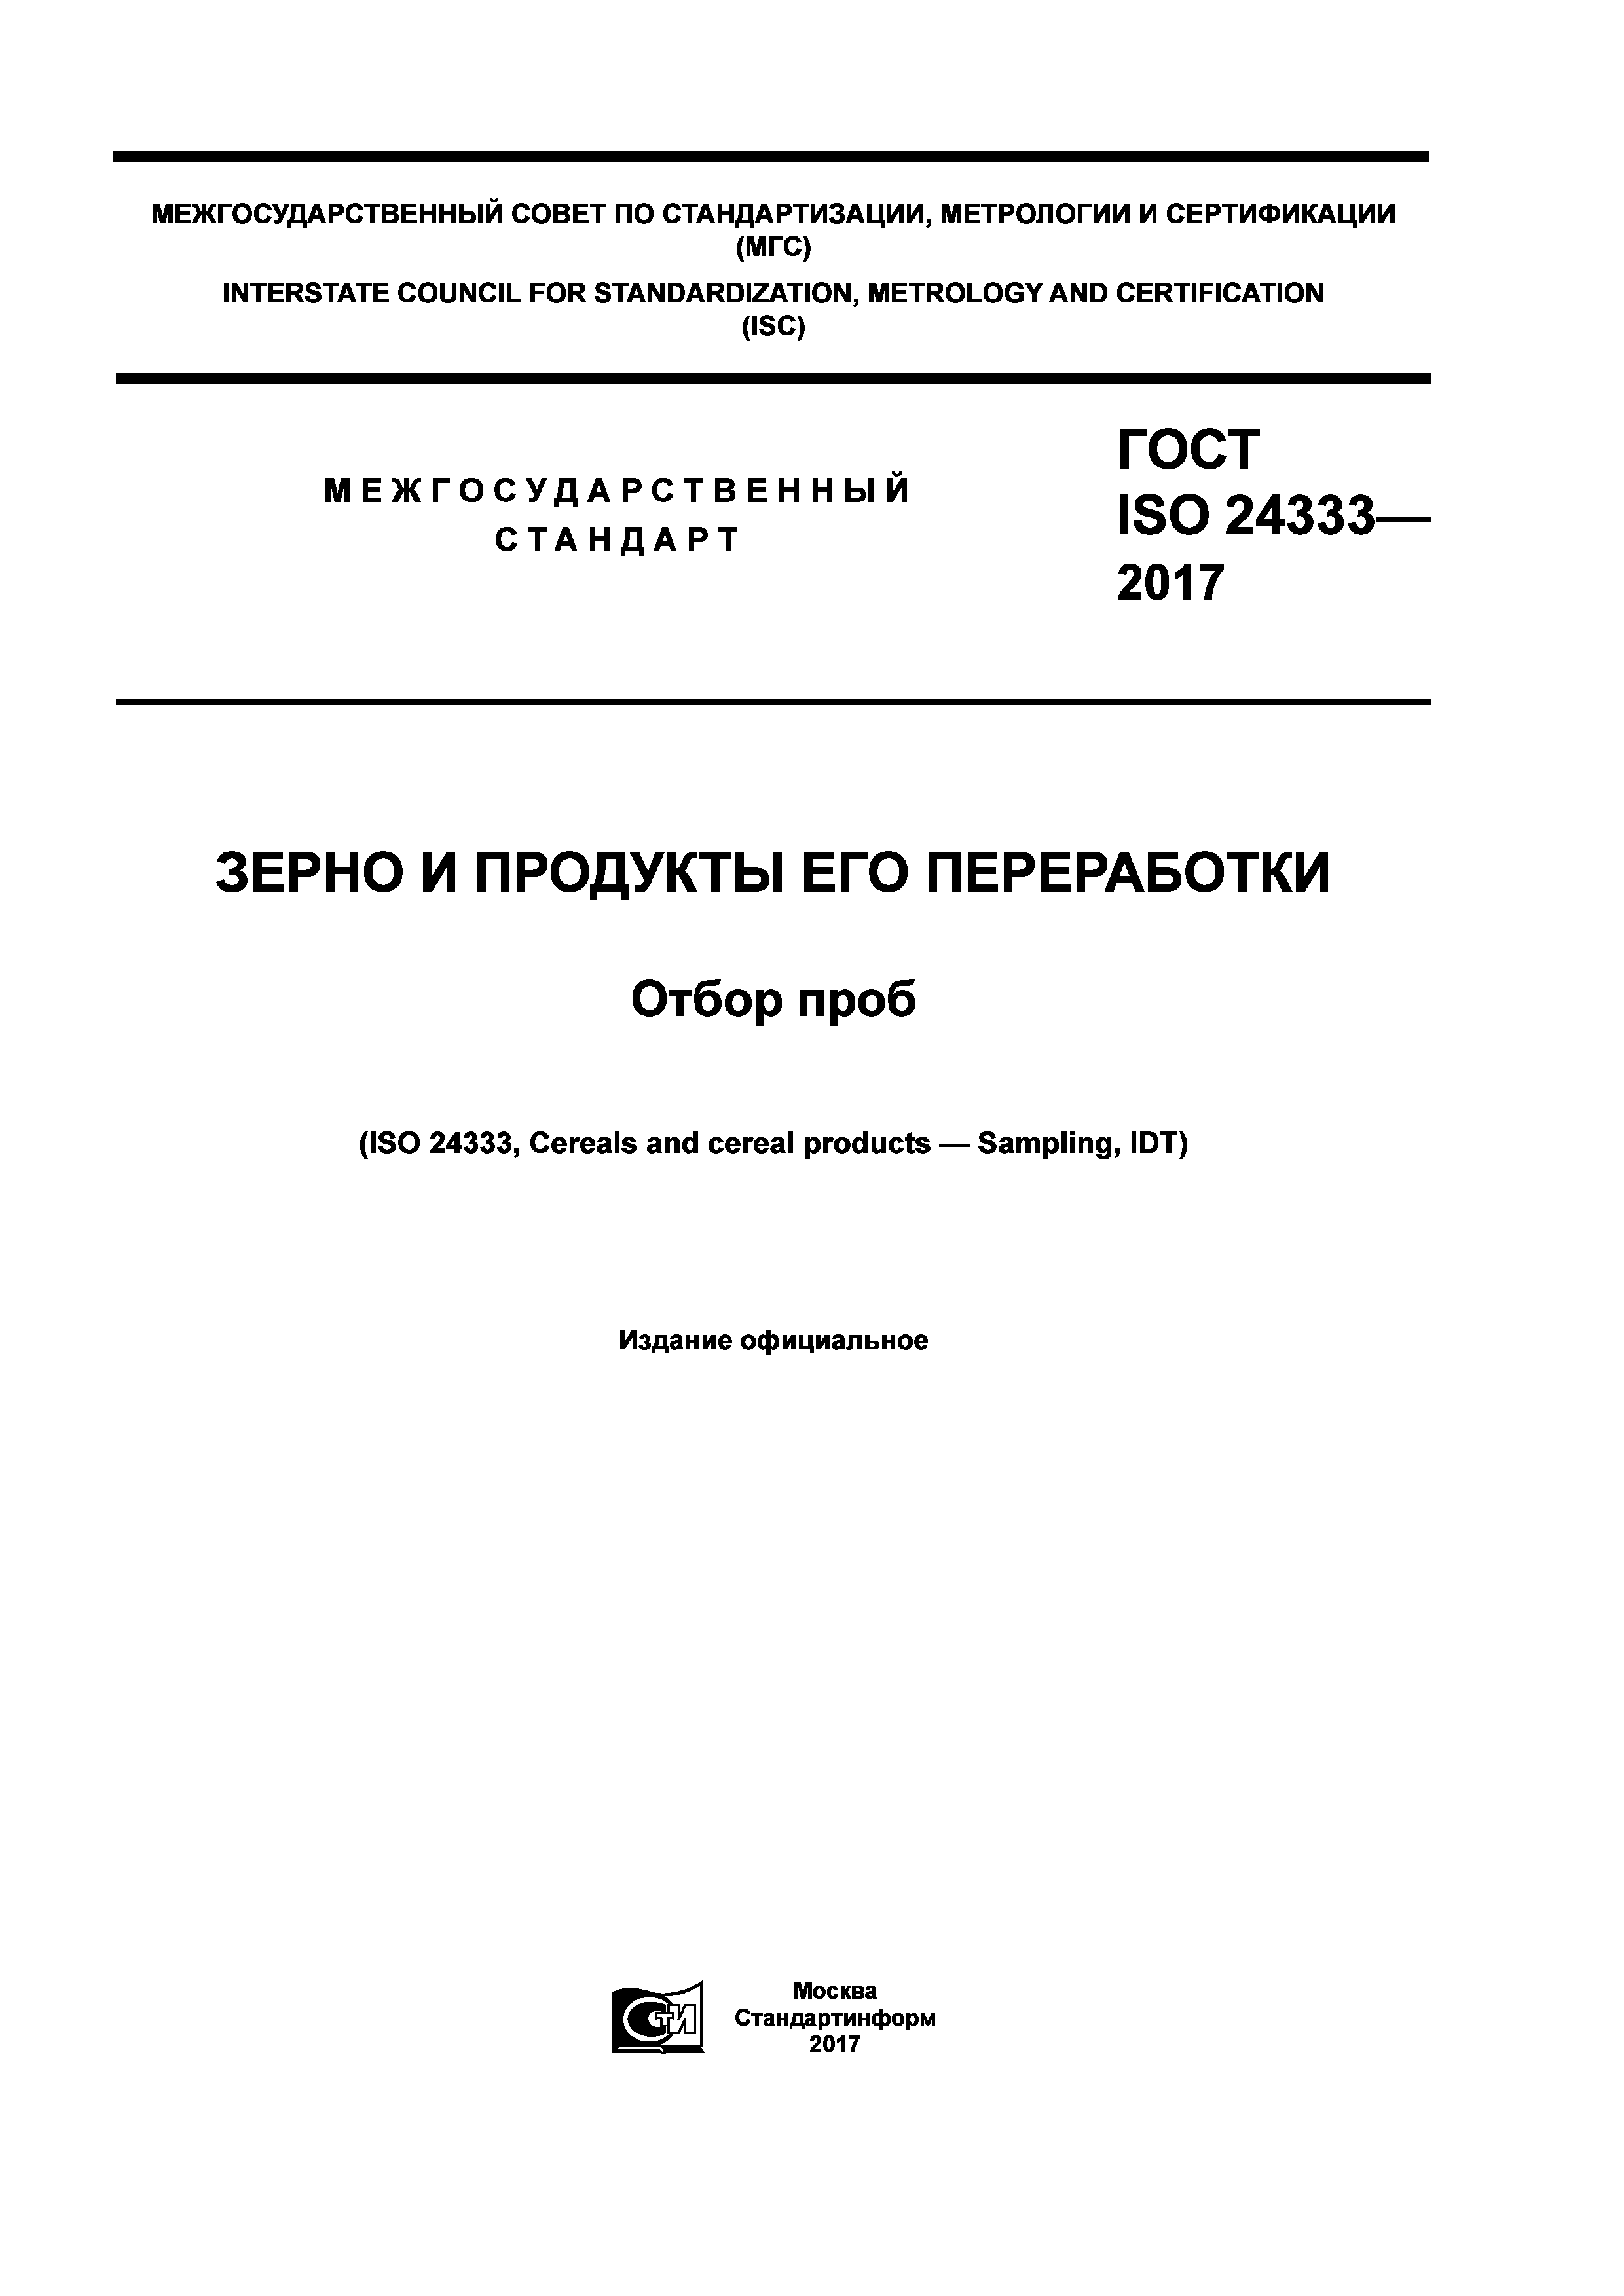 ГОСТ ISO 24333-2017